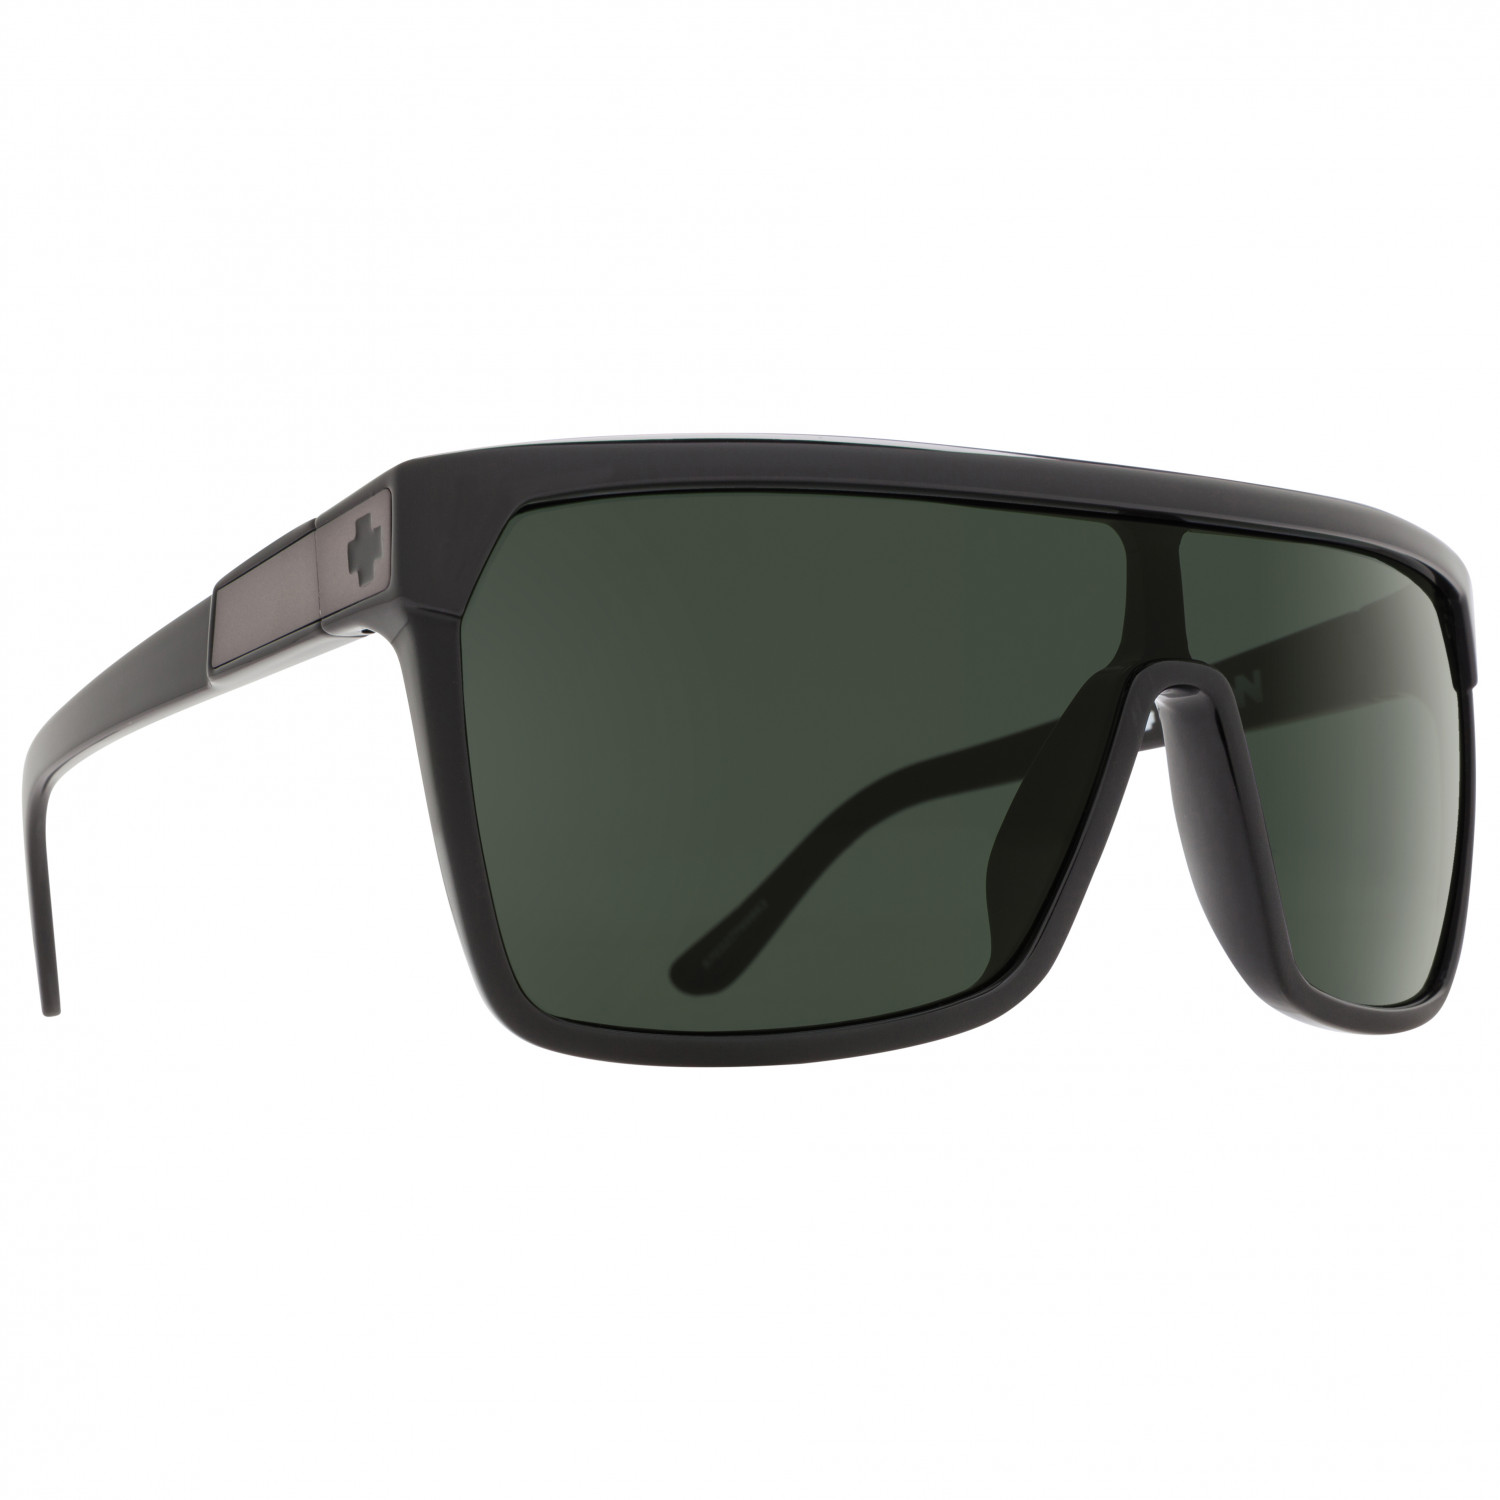 Солнцезащитные очки Spy+ Flynn S3 (VLT 15%), цвет Black/Matte Black berry flynn northern spy